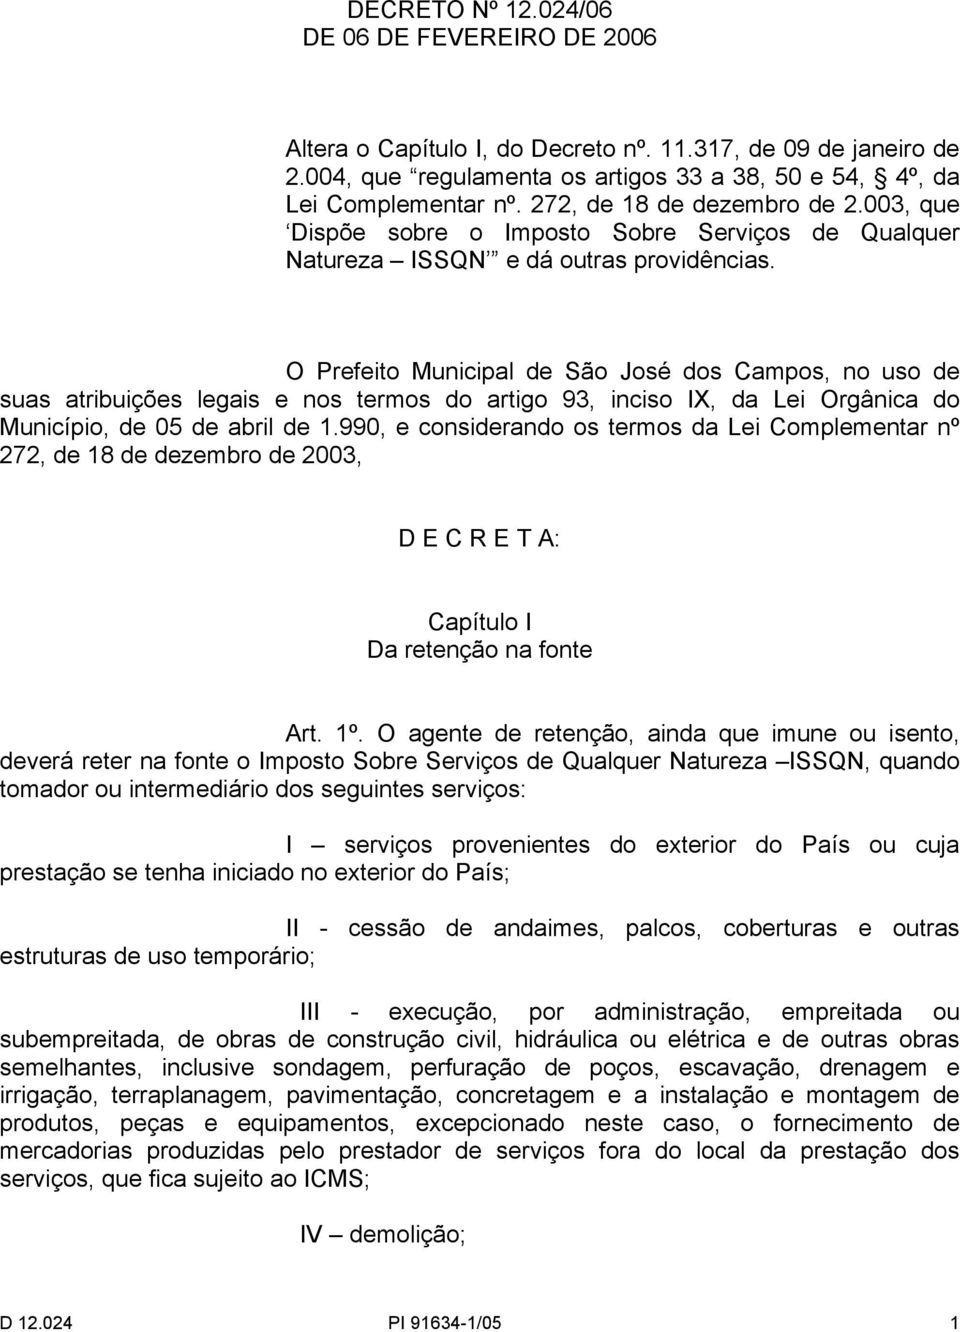 O Prefeito Municipal de São José dos Campos, no uso de suas atribuições legais e nos termos do artigo 93, inciso IX, da Lei Orgânica do Município, de 05 de abril de 1.